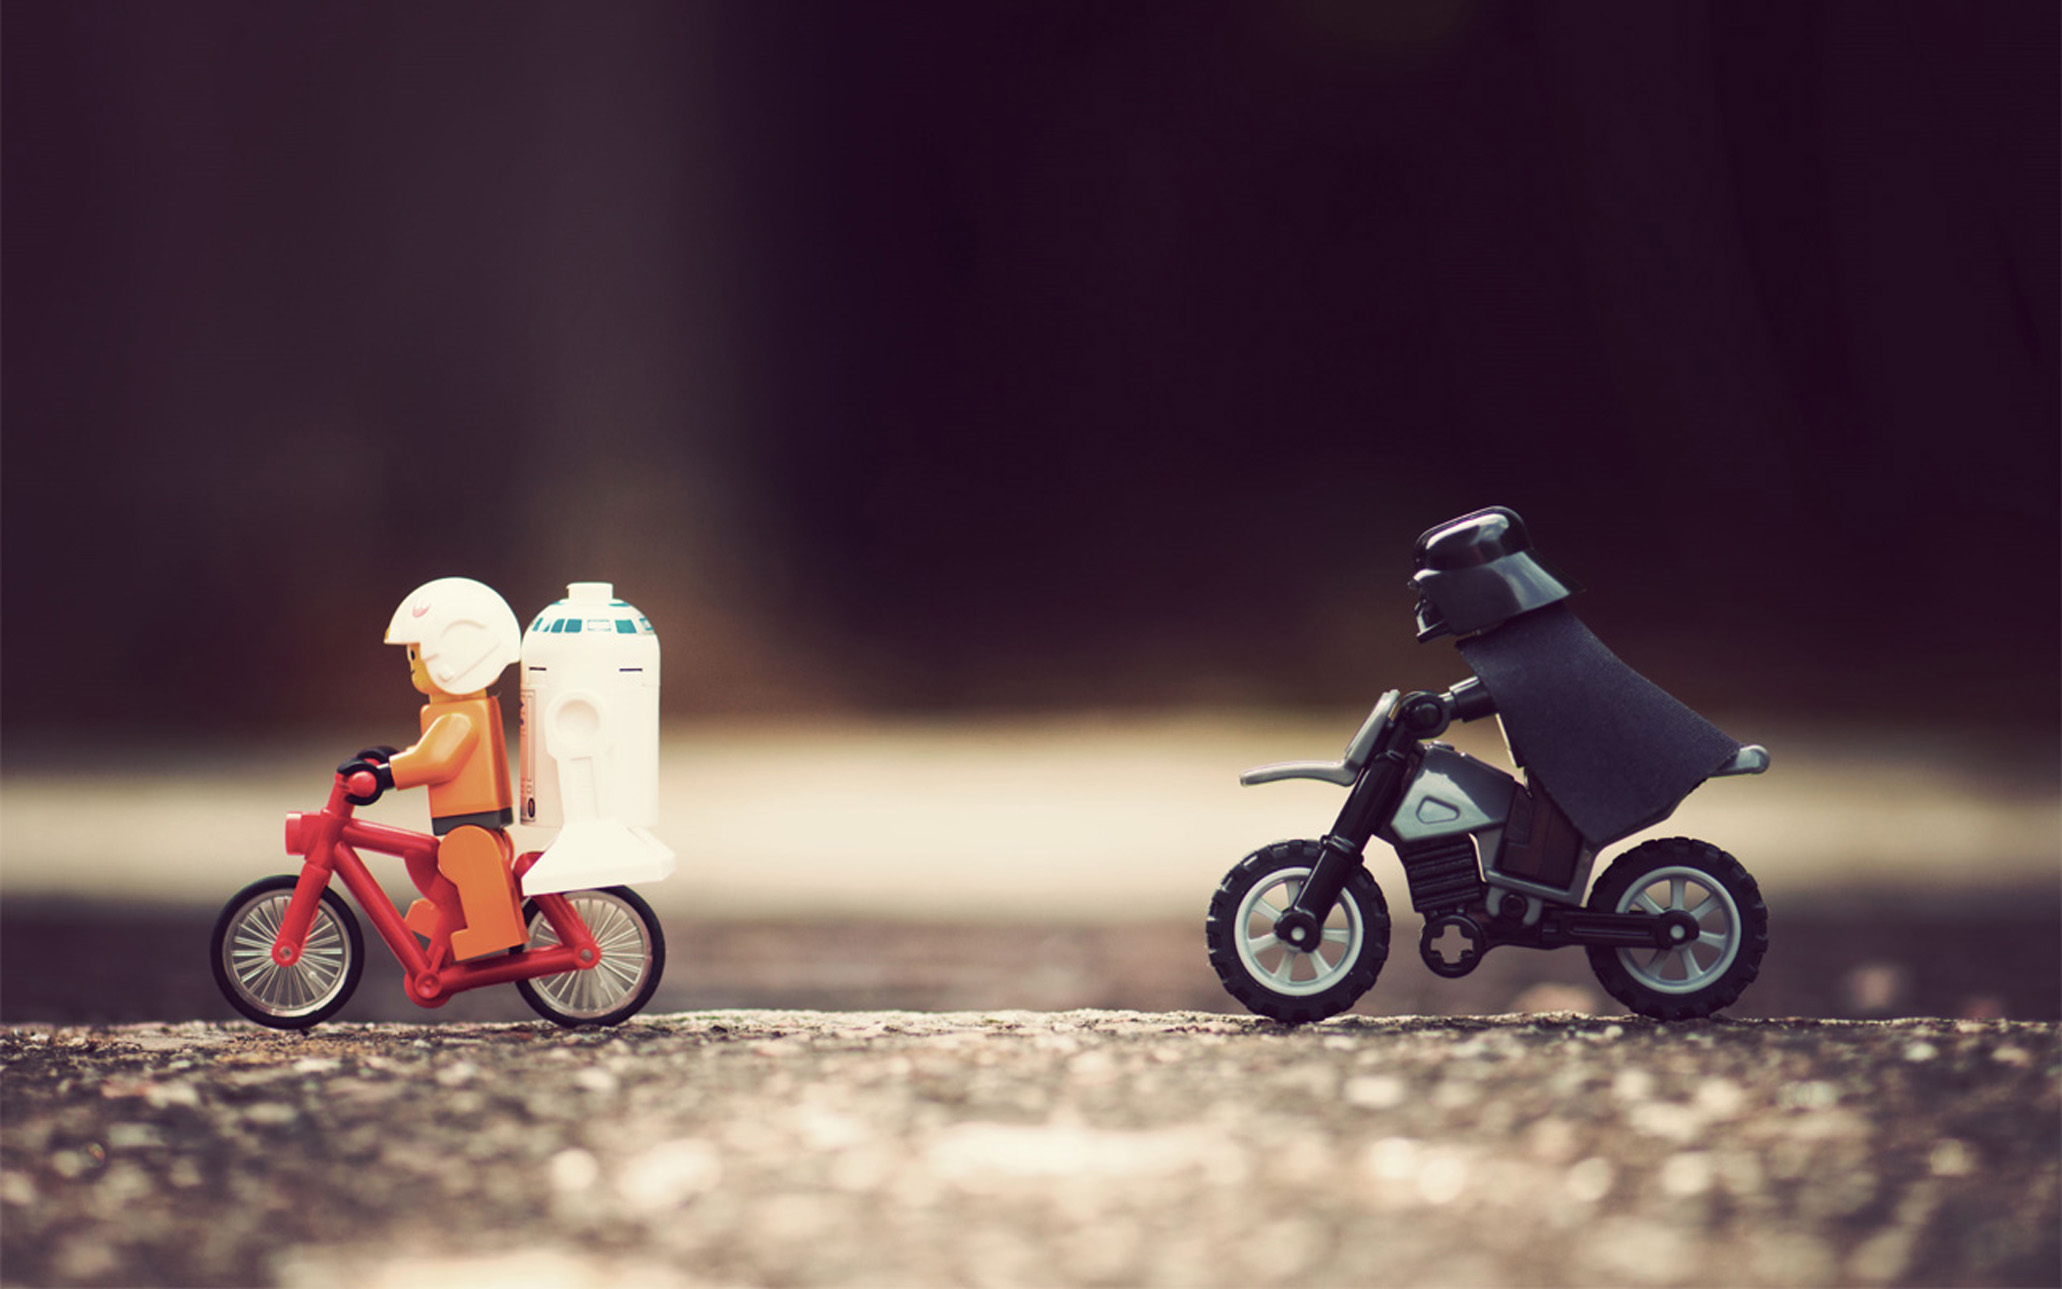 Star Wars, Darth Vader, R2D2, Legos - desktop wallpaper